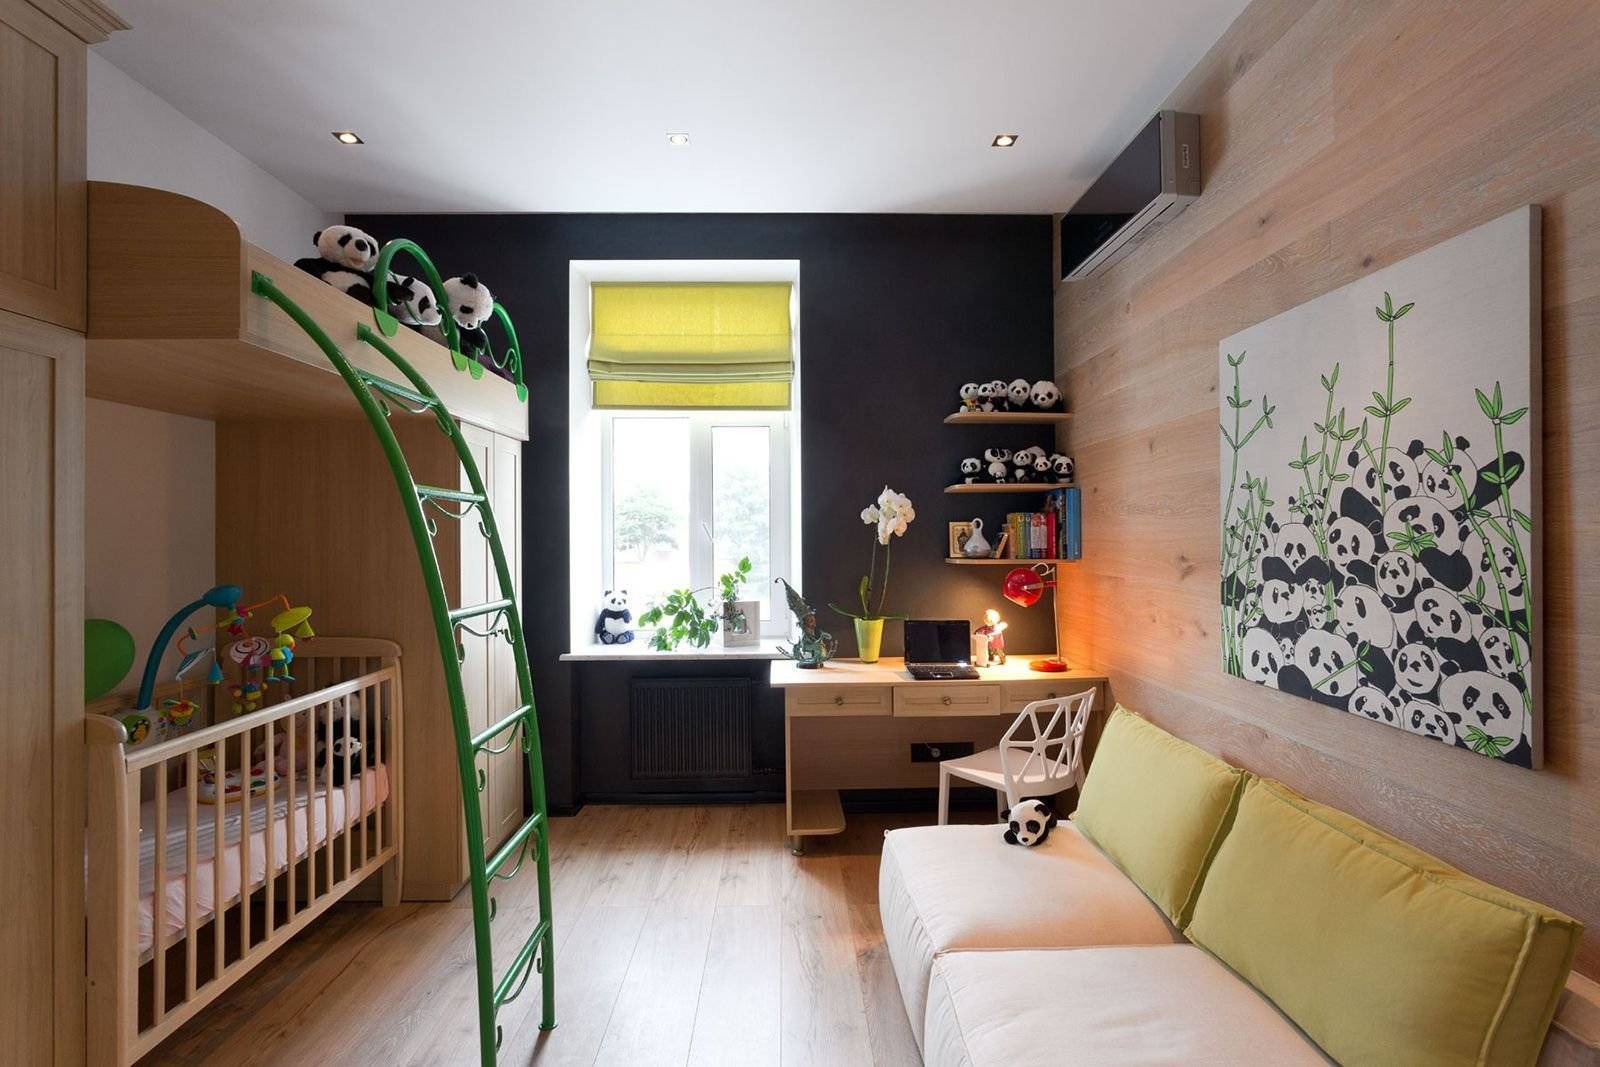 Кровать в однокомнатной квартире: 7 удобных идей